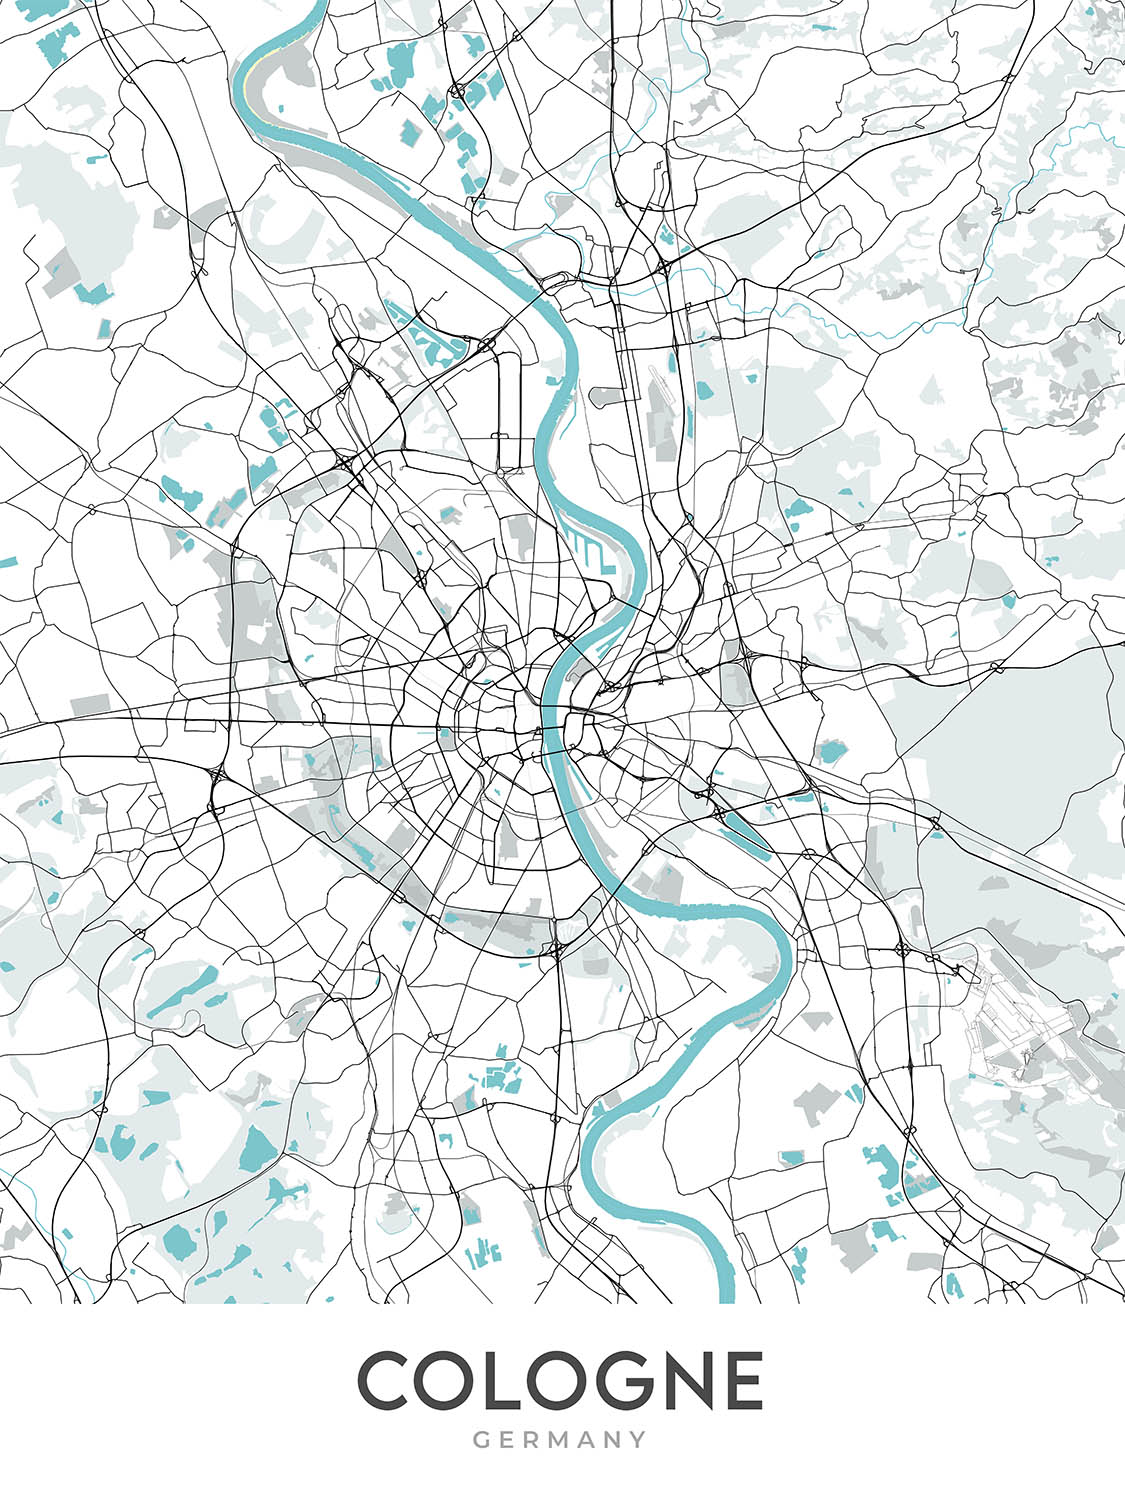 Plan de la ville moderne de Cologne, Allemagne : cathédrale, triangle, opéra, musée, zoo